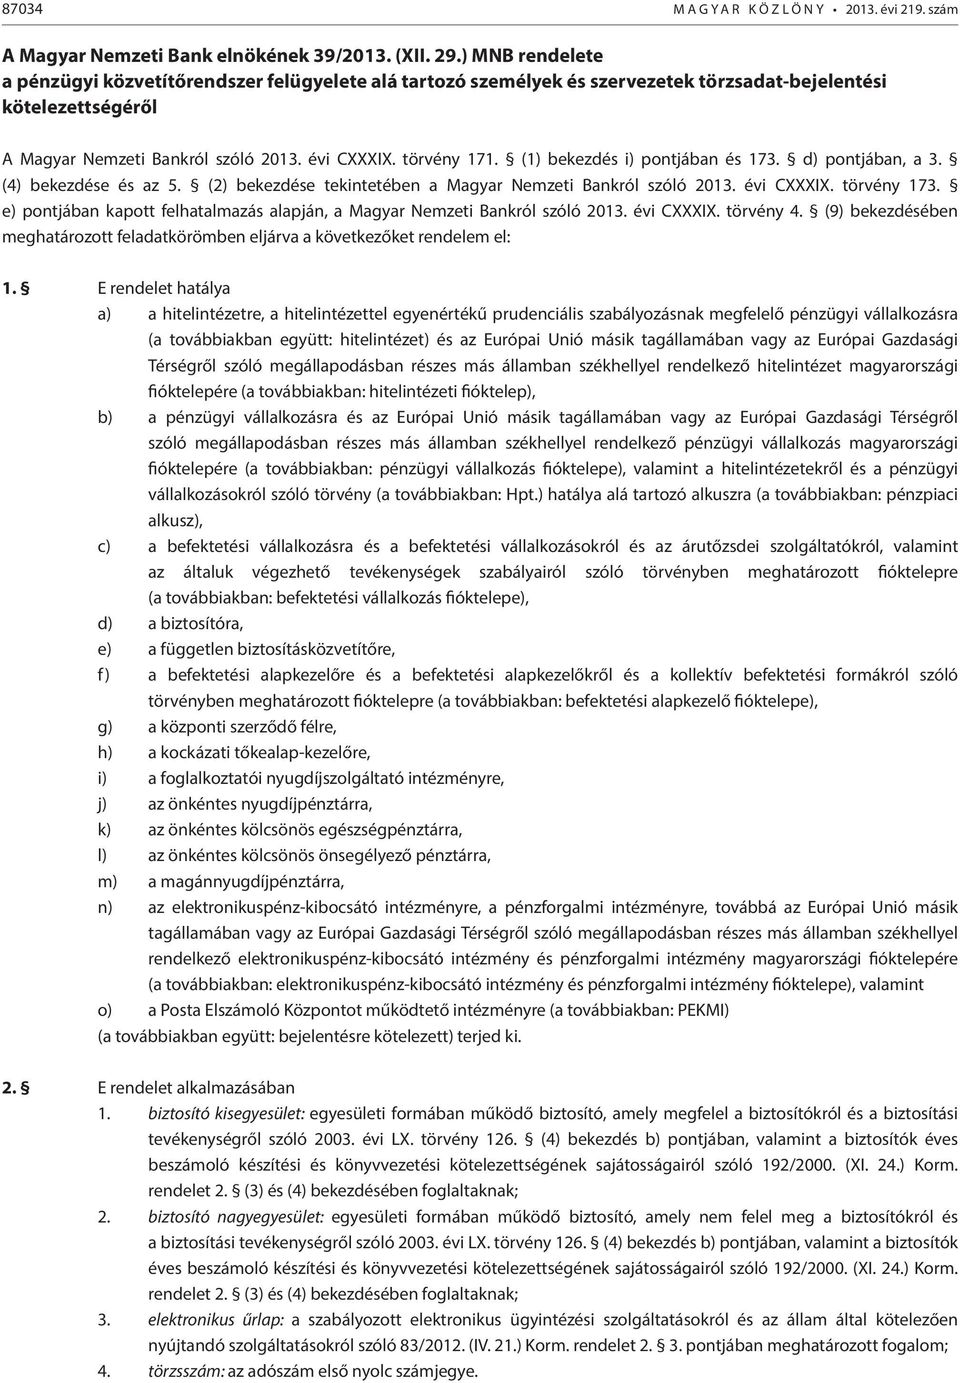 (1) bekezdés i) pontjában és 173. d) pontjában, a 3. (4) bekezdése és az 5. (2) bekezdése tekintetében a Magyar Nemzeti Bankról szóló 2013. évi CXXXIX. törvény 173.